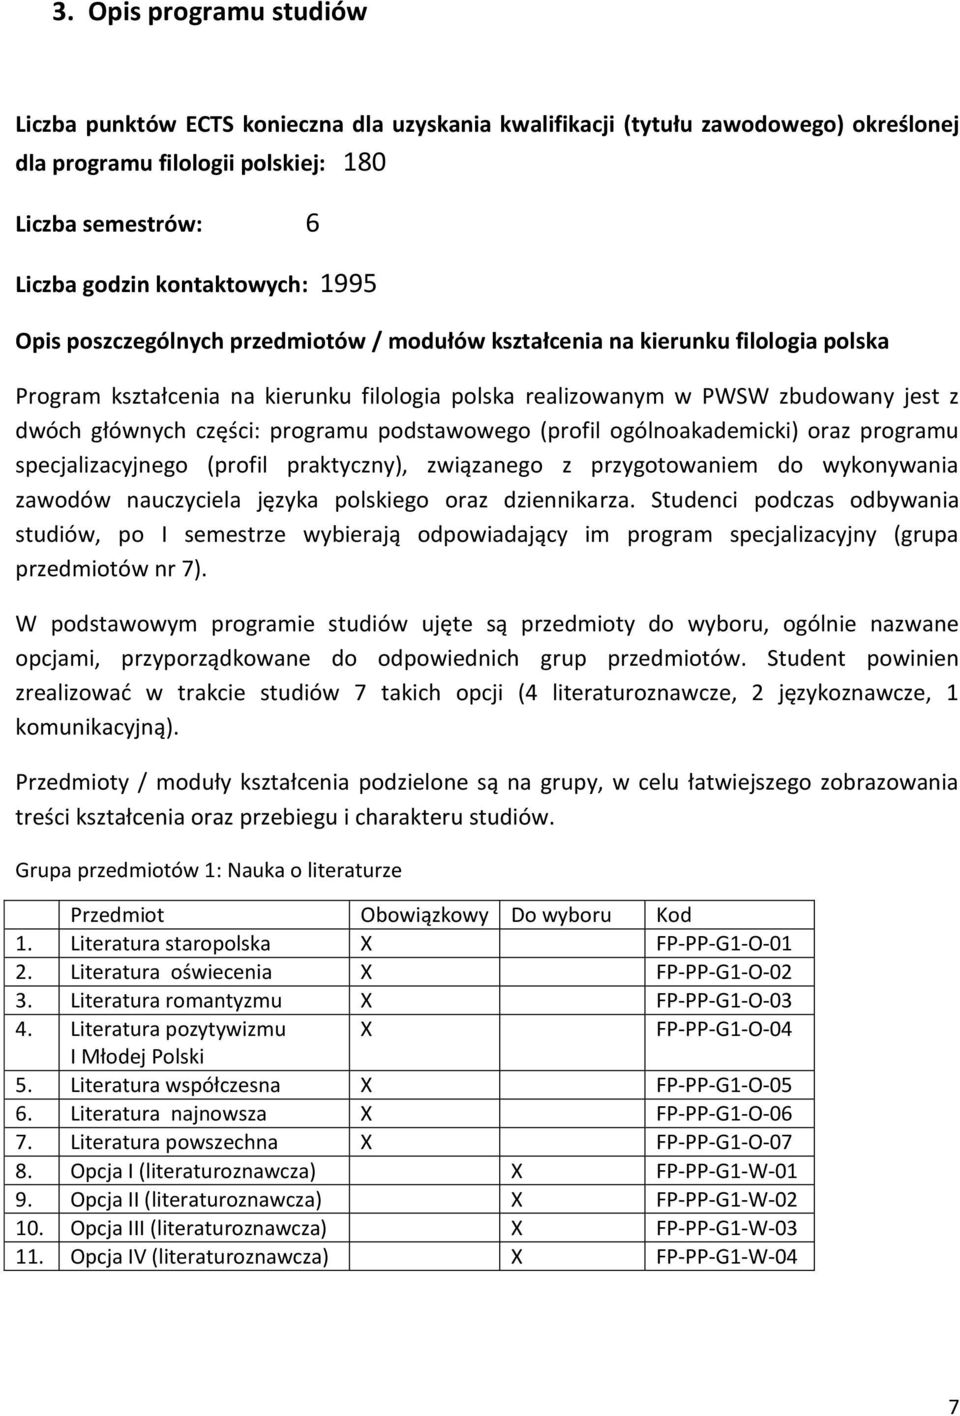 programu podstawowego (profil ogólnoakademicki) oraz programu specjalizacyjnego (profil praktyczny), związanego z przygotowaniem do wykonywania zawodów nauczyciela języka polskiego oraz dziennikarza.